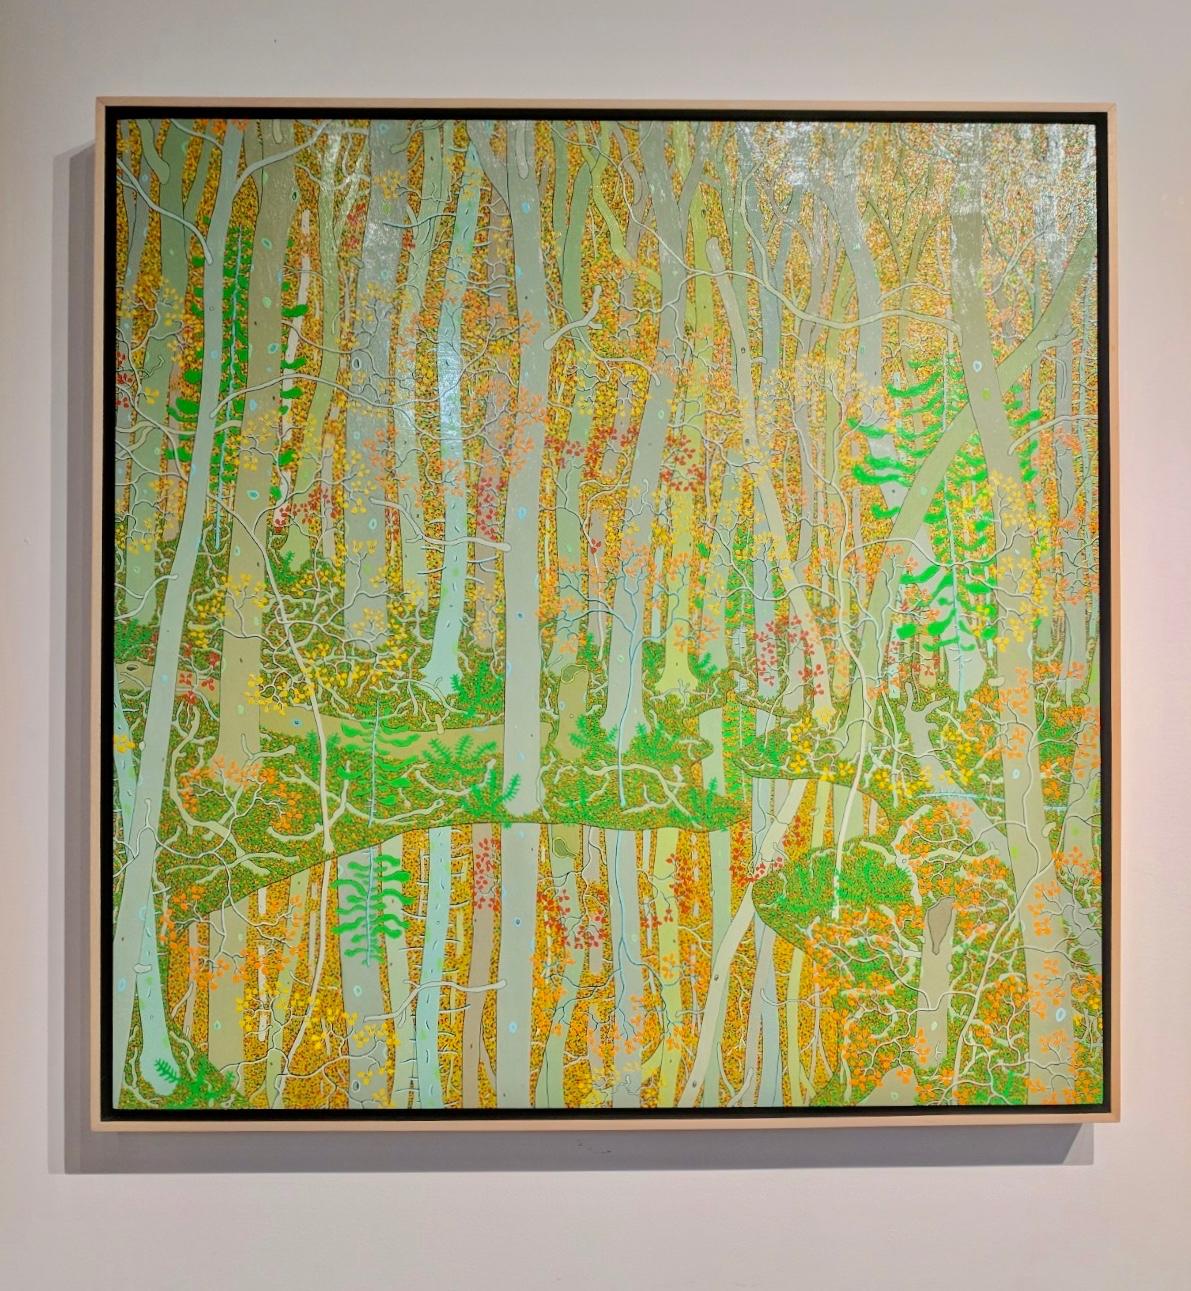 Reflektionen am Eingangsbereich des Frühlings, Waldlandschaft, Beige, Orange, Grün – Painting von Gregory Hennen